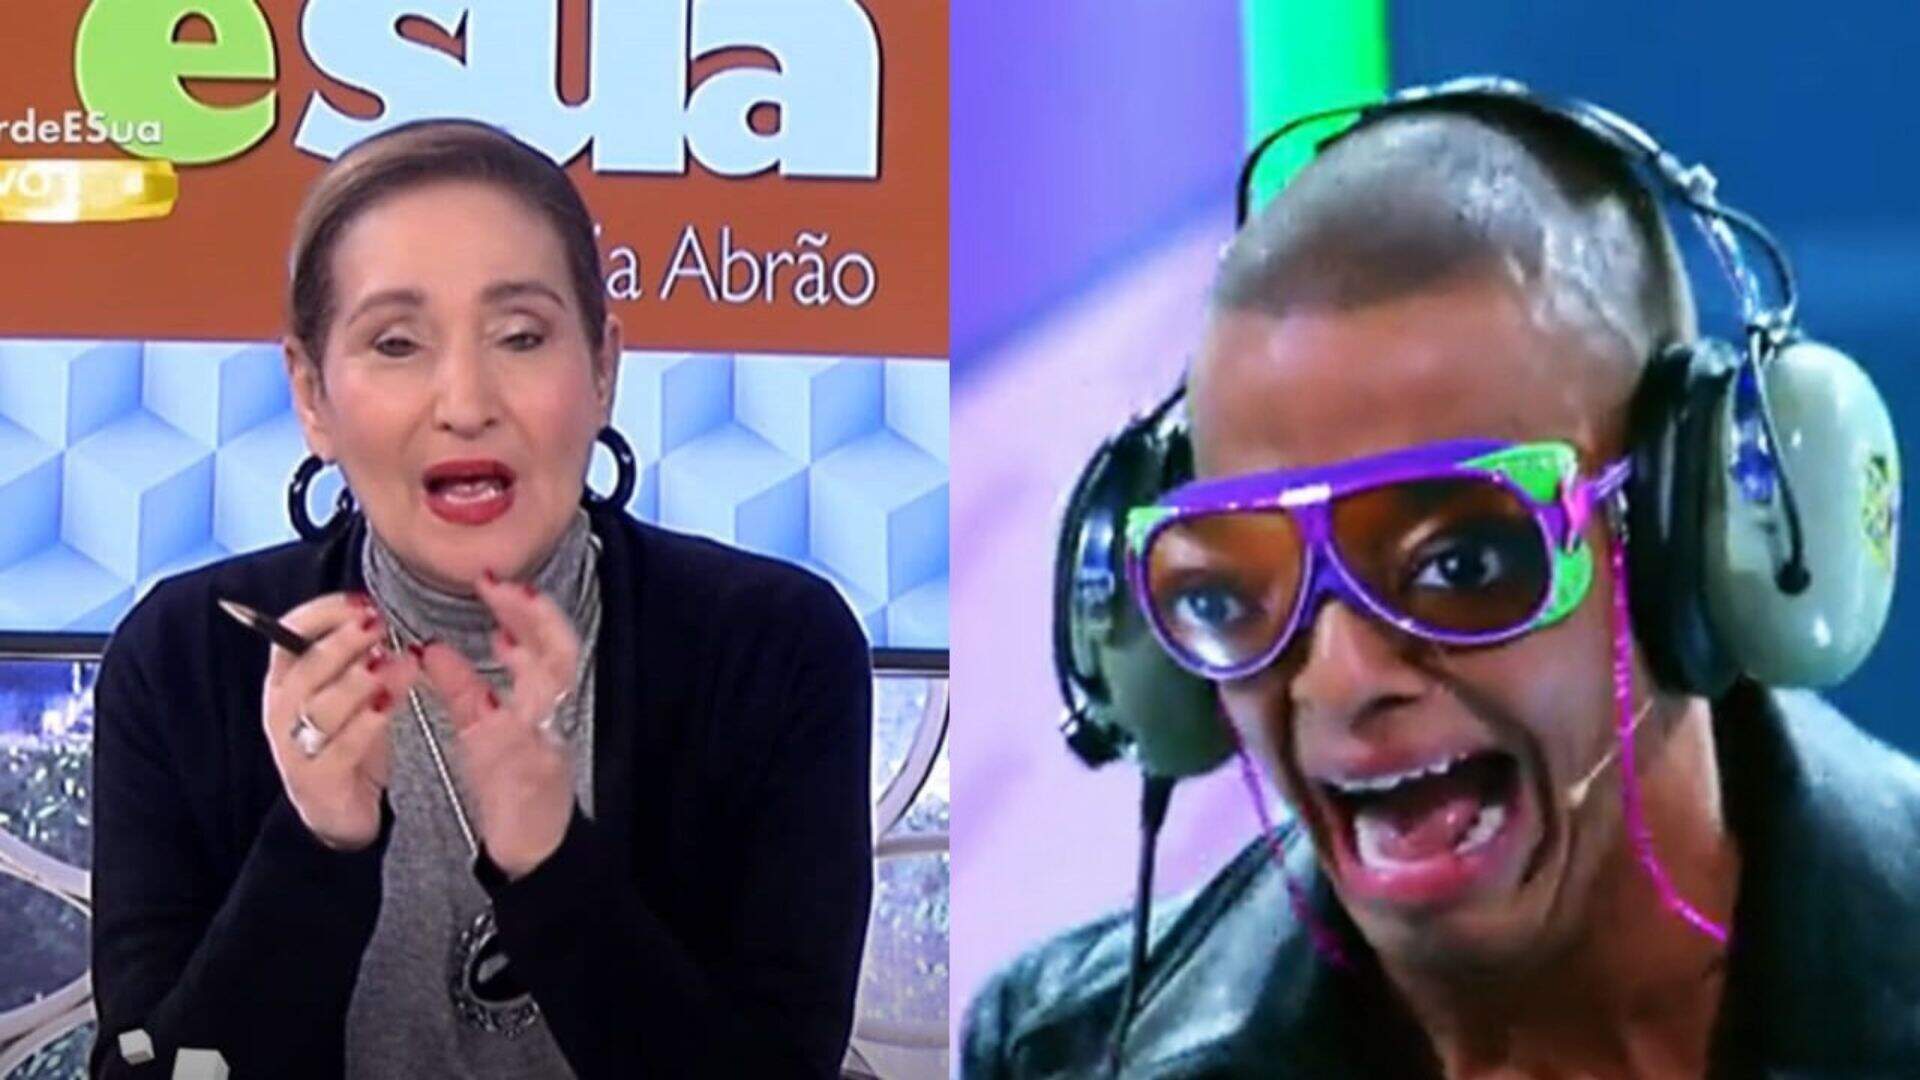 Sonia Abrão detona Caldeirão e dispara: “Cadê o padrão de qualidade?” - Metropolitana FM